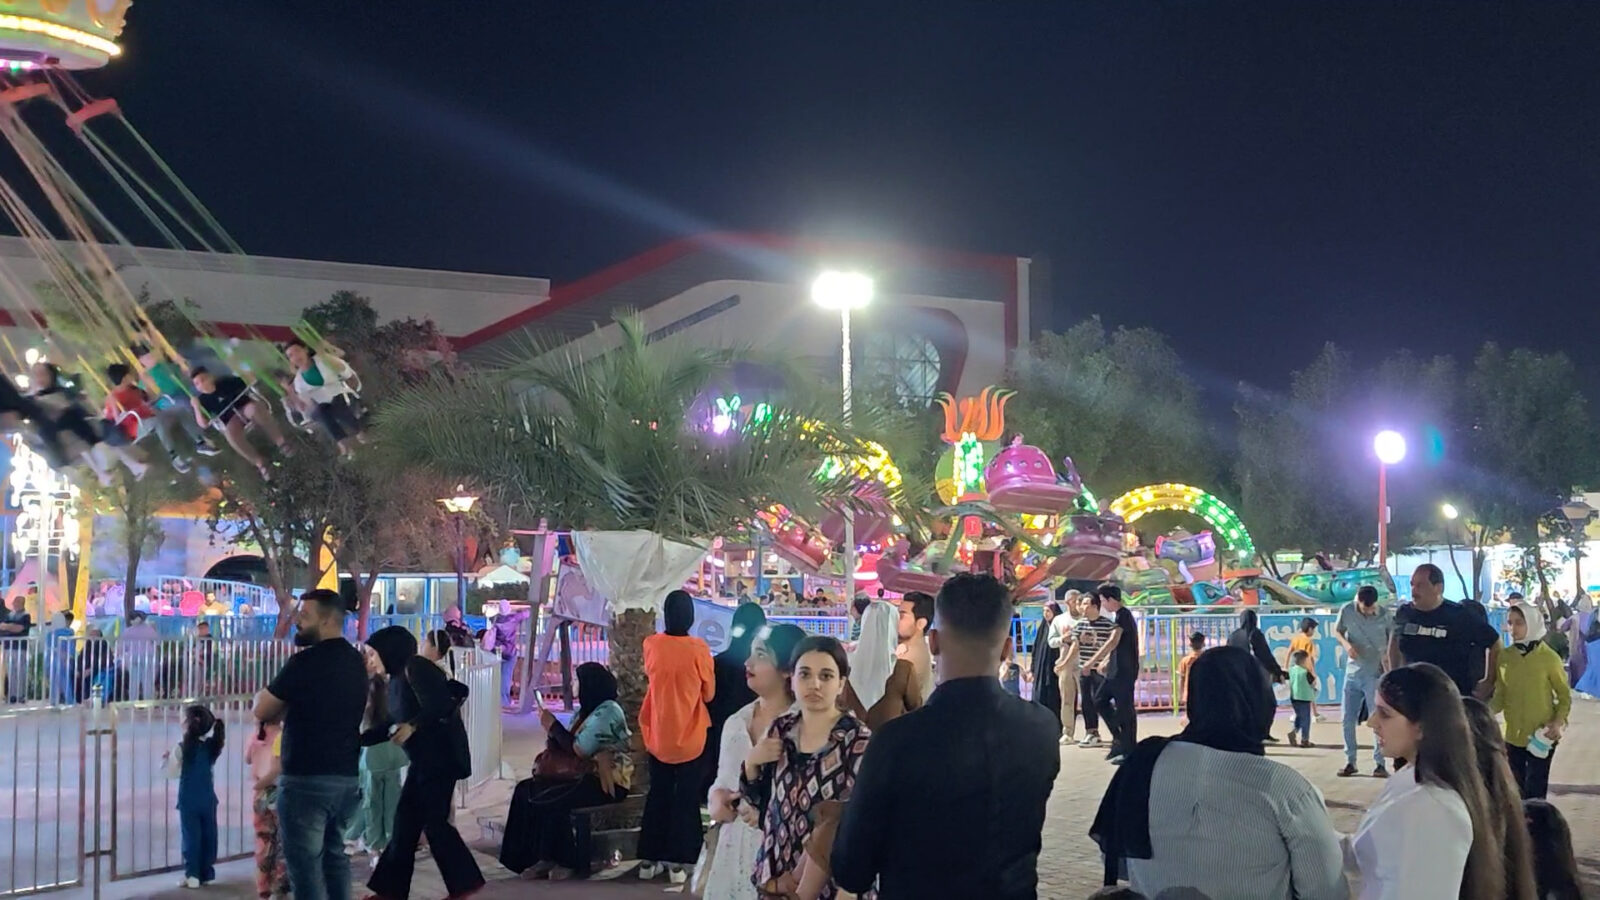 فيديو: مدينة ألعاب زيونة قبل قليل.. العوائل احتفلت بالعيد حتى ساعة متأخرة